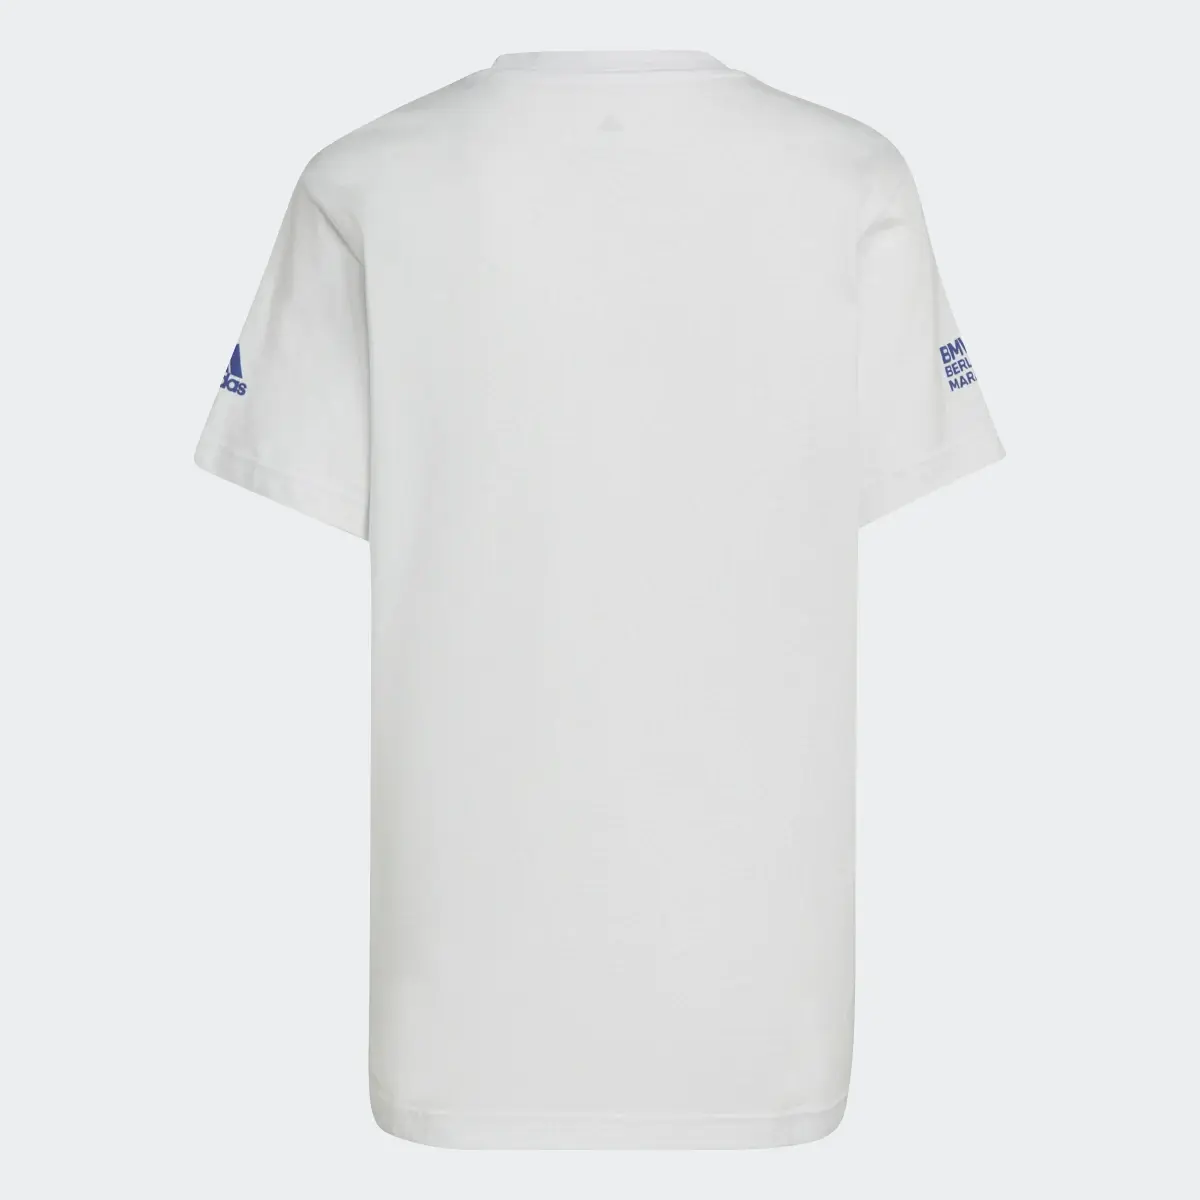 Adidas Camiseta Running Graphic. 2